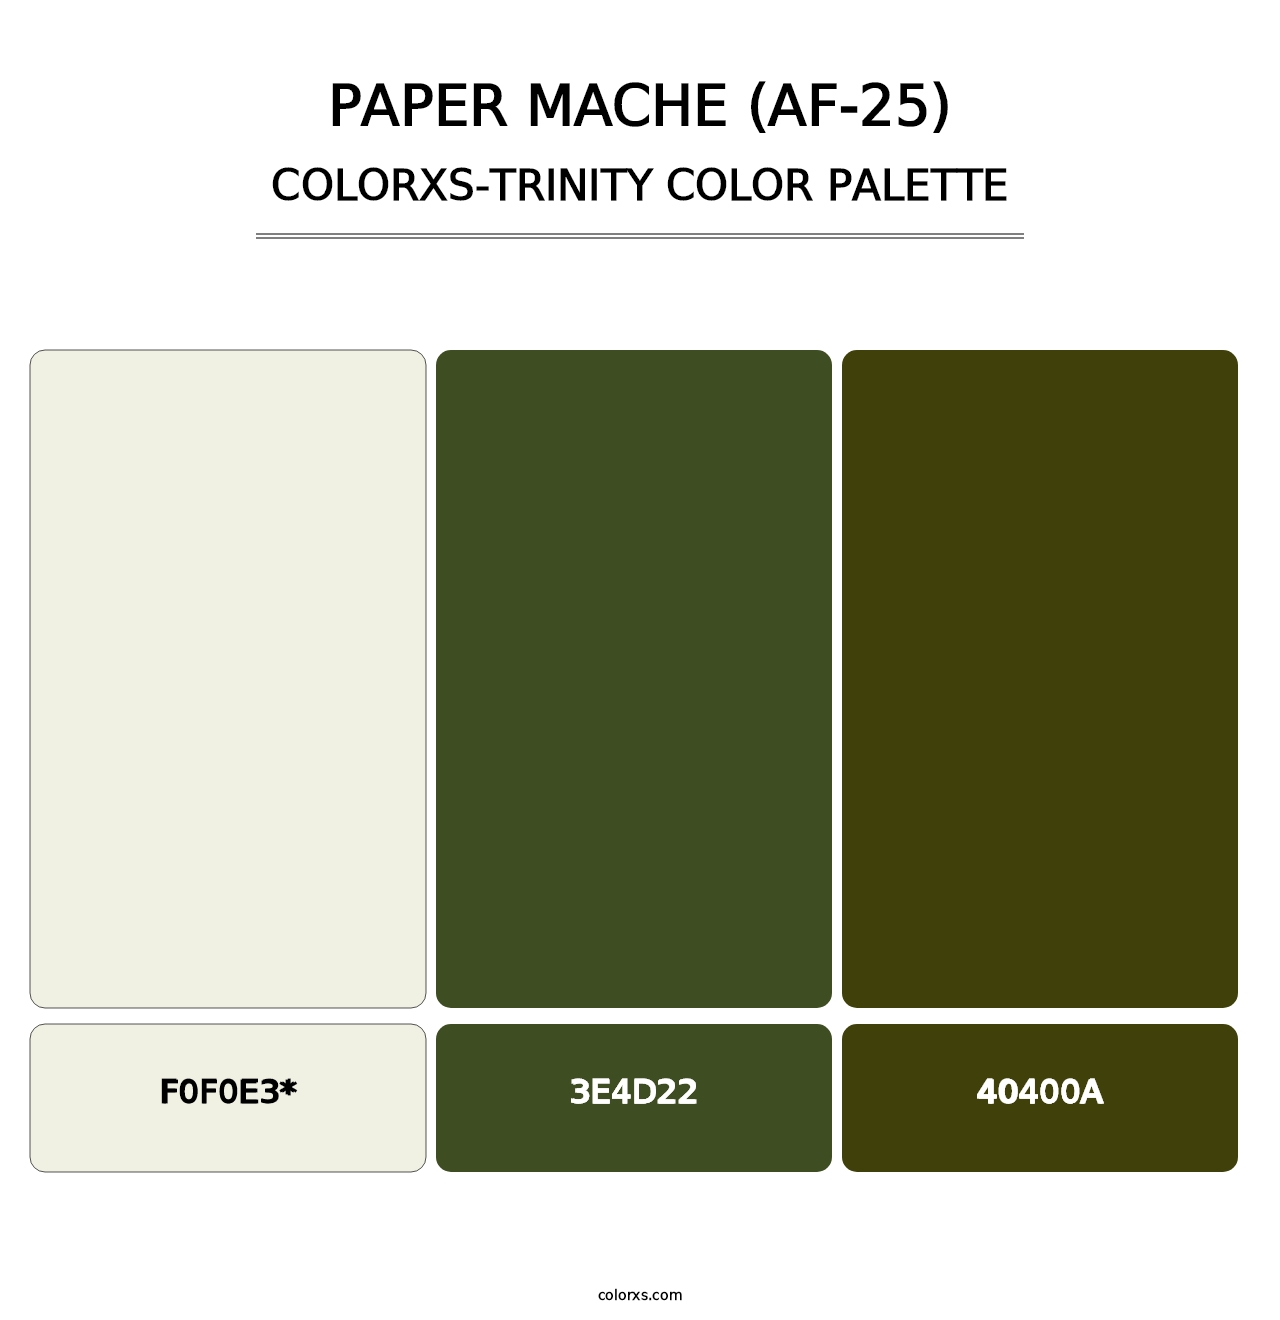 Paper Mache (AF-25) - Colorxs Trinity Palette